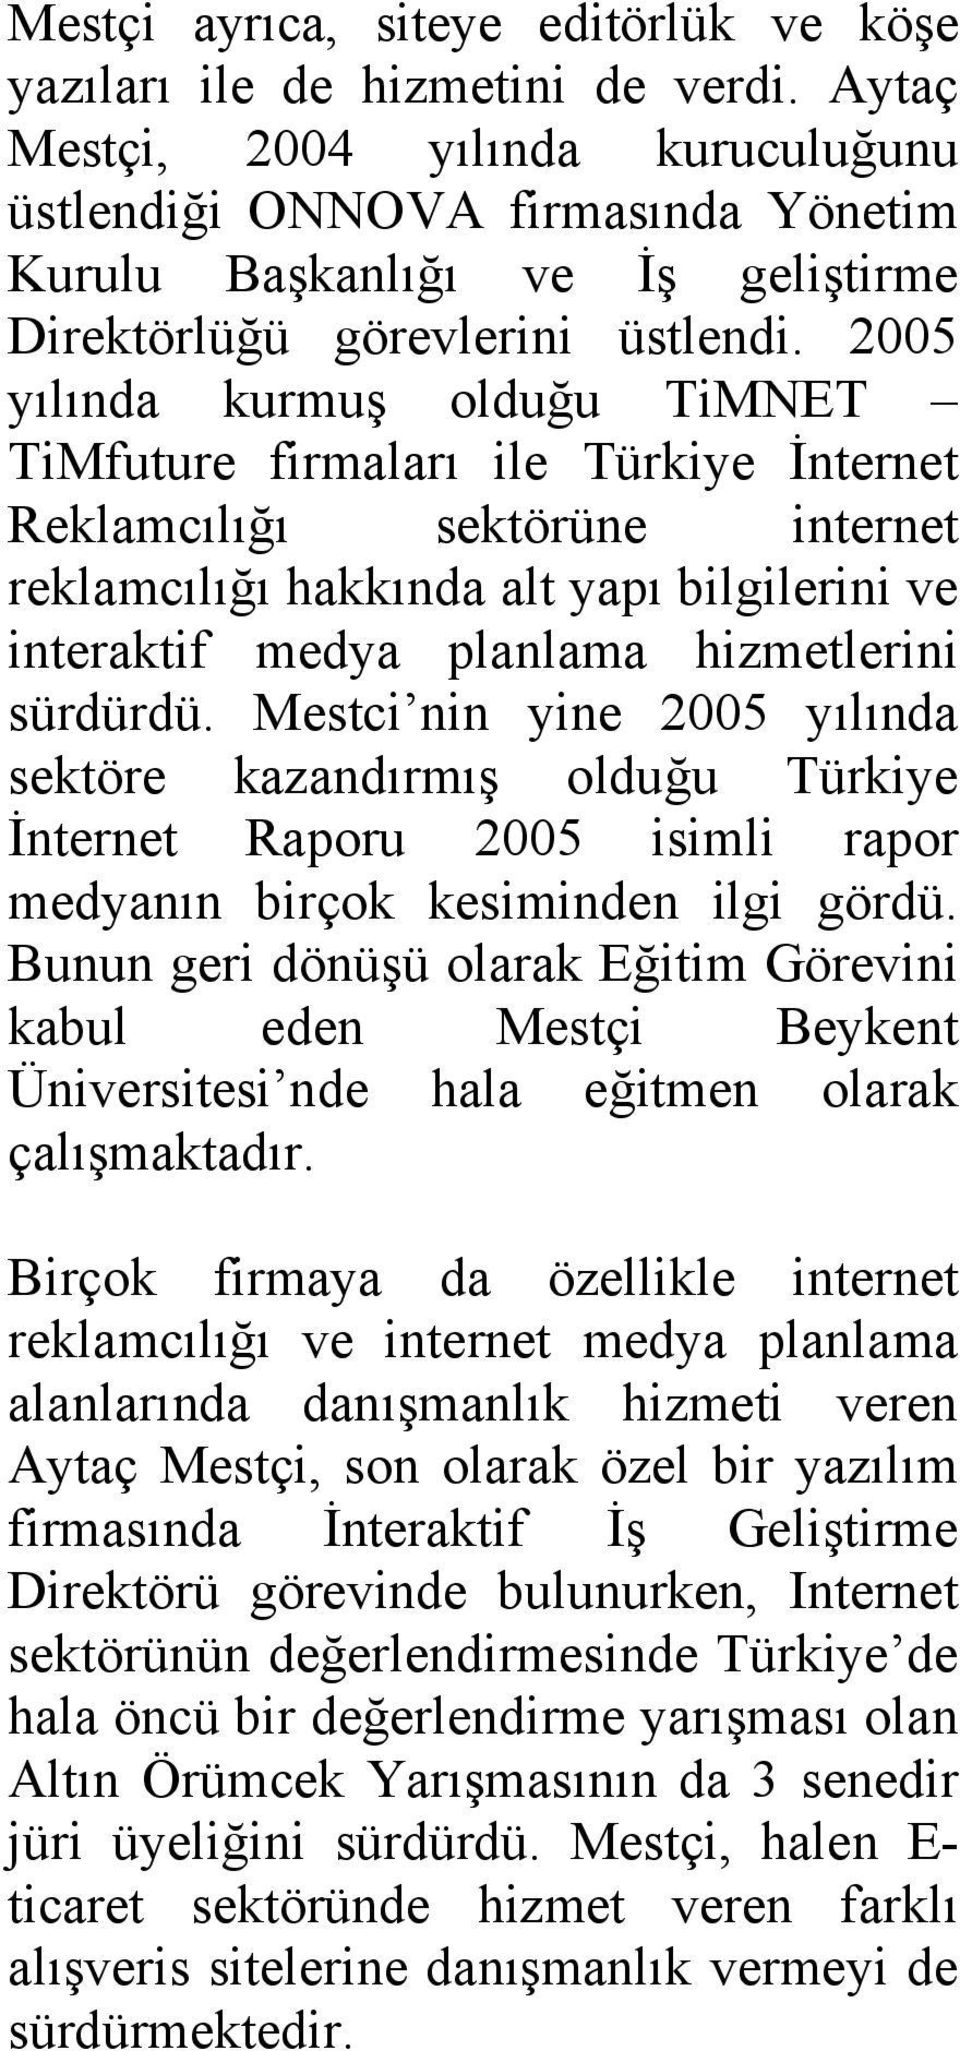 2005 yılında kurmuş olduğu TiMNET TiMfuture firmaları ile Türkiye İnternet Reklamcılığı sektörüne internet reklamcılığı hakkında alt yapı bilgilerini ve interaktif medya planlama hizmetlerini